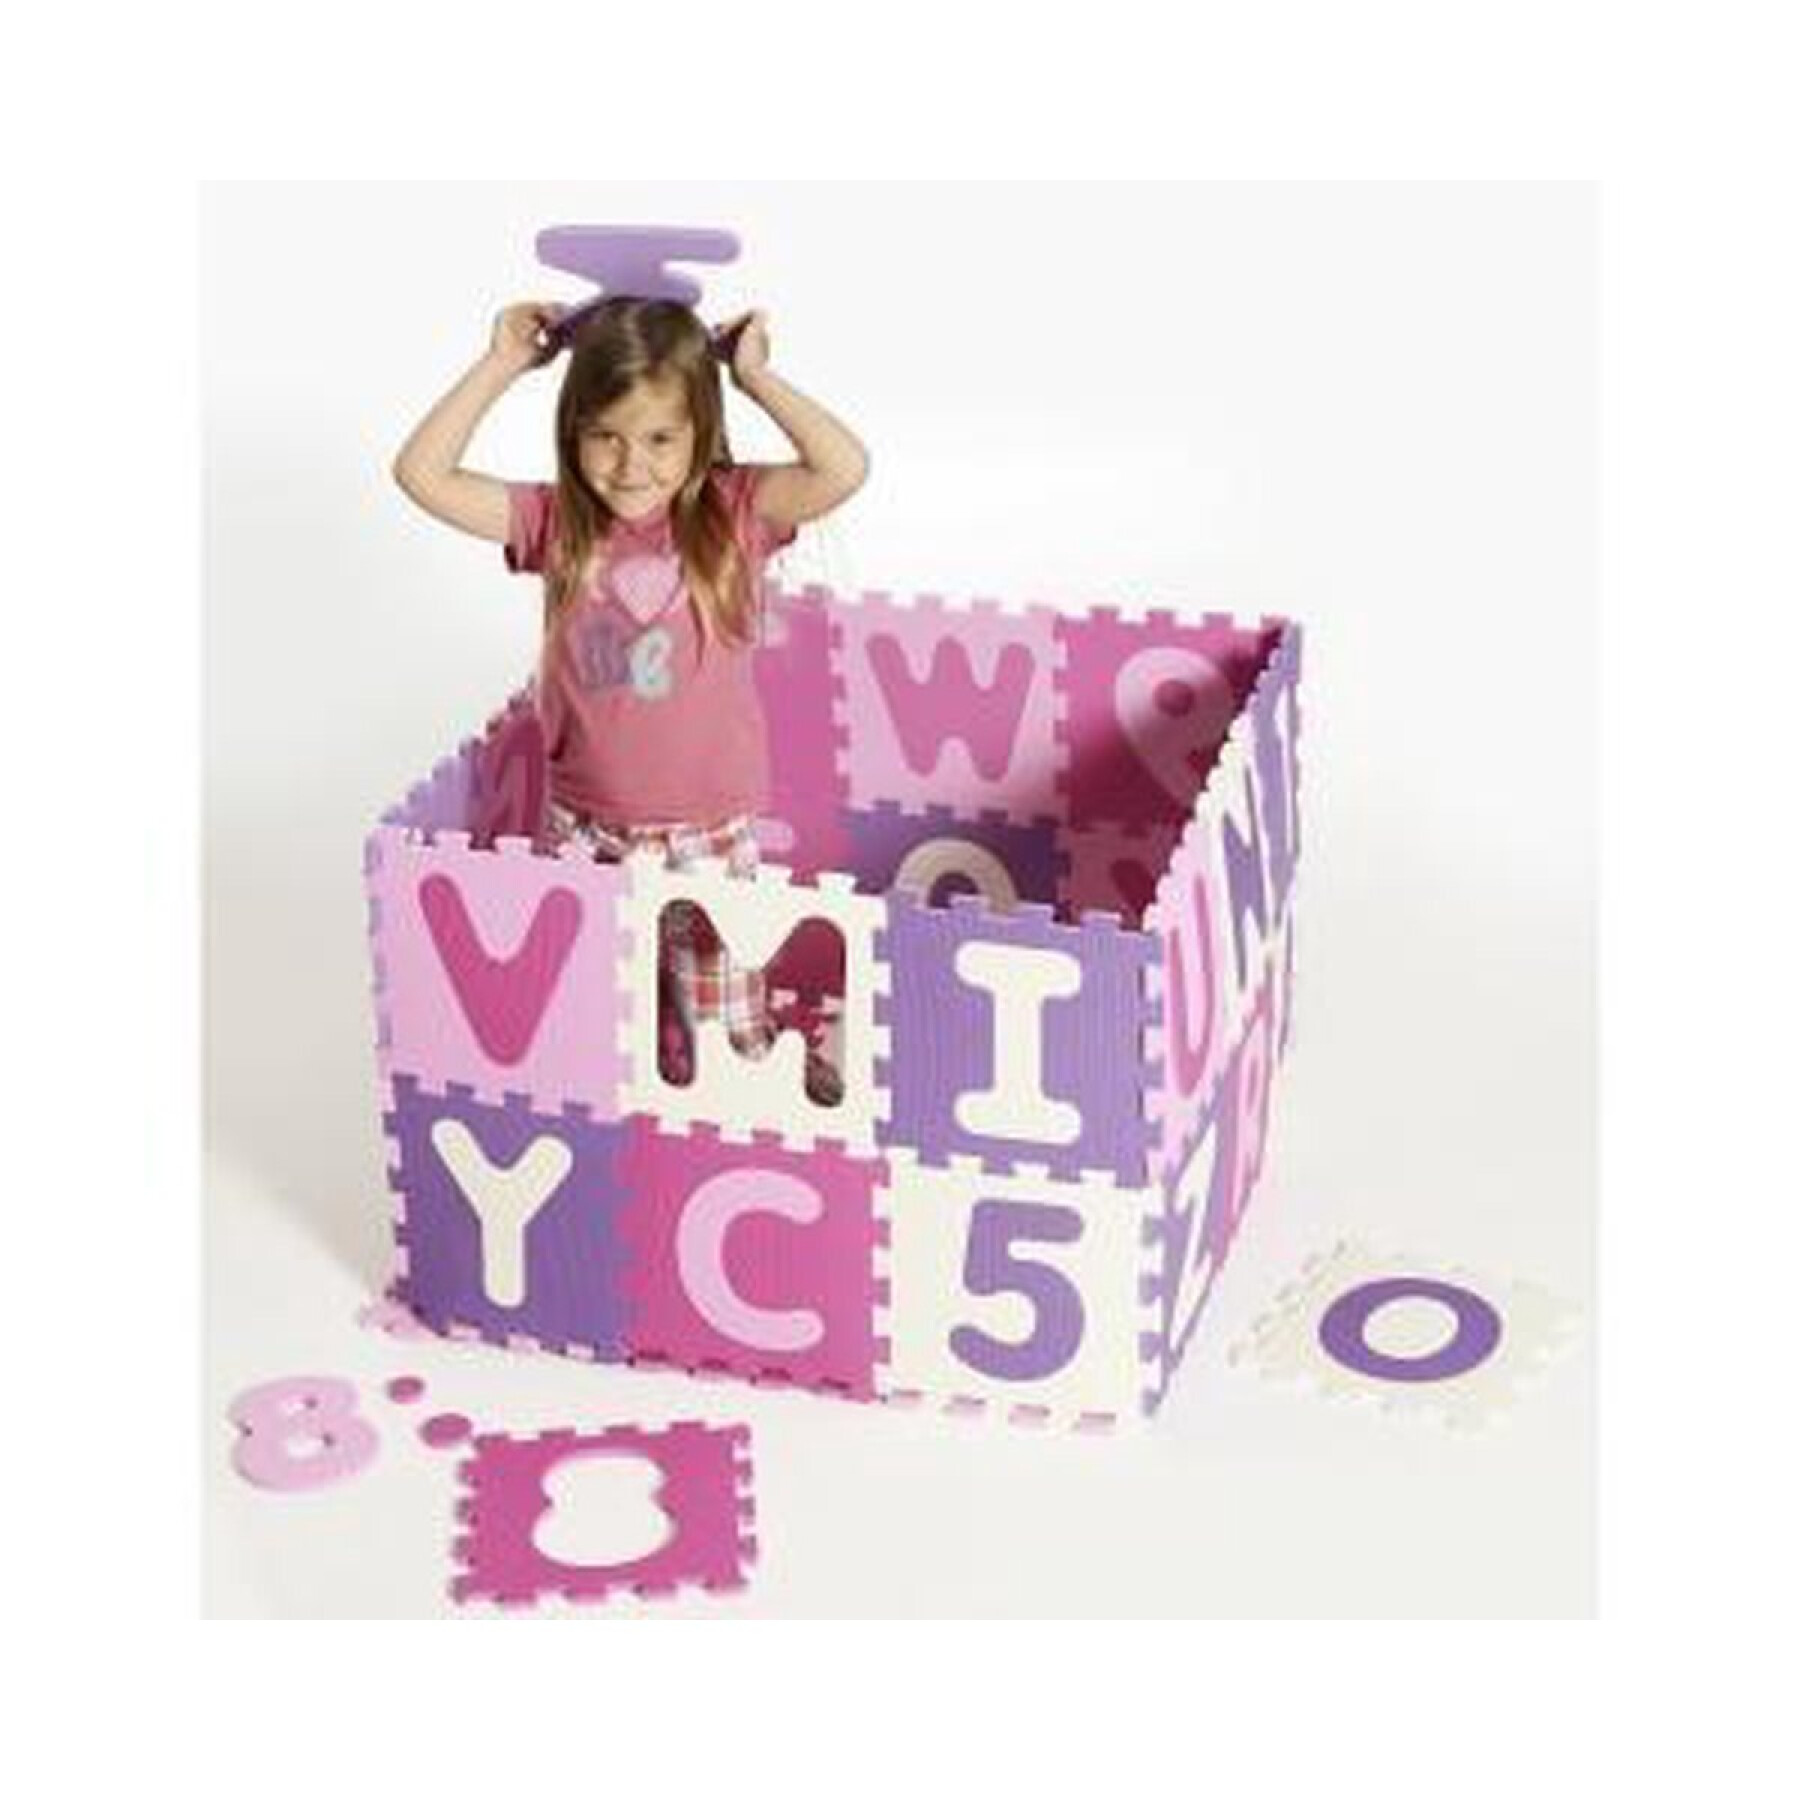 Children's puzzle mat Playshoes Eva Pastel (x36)